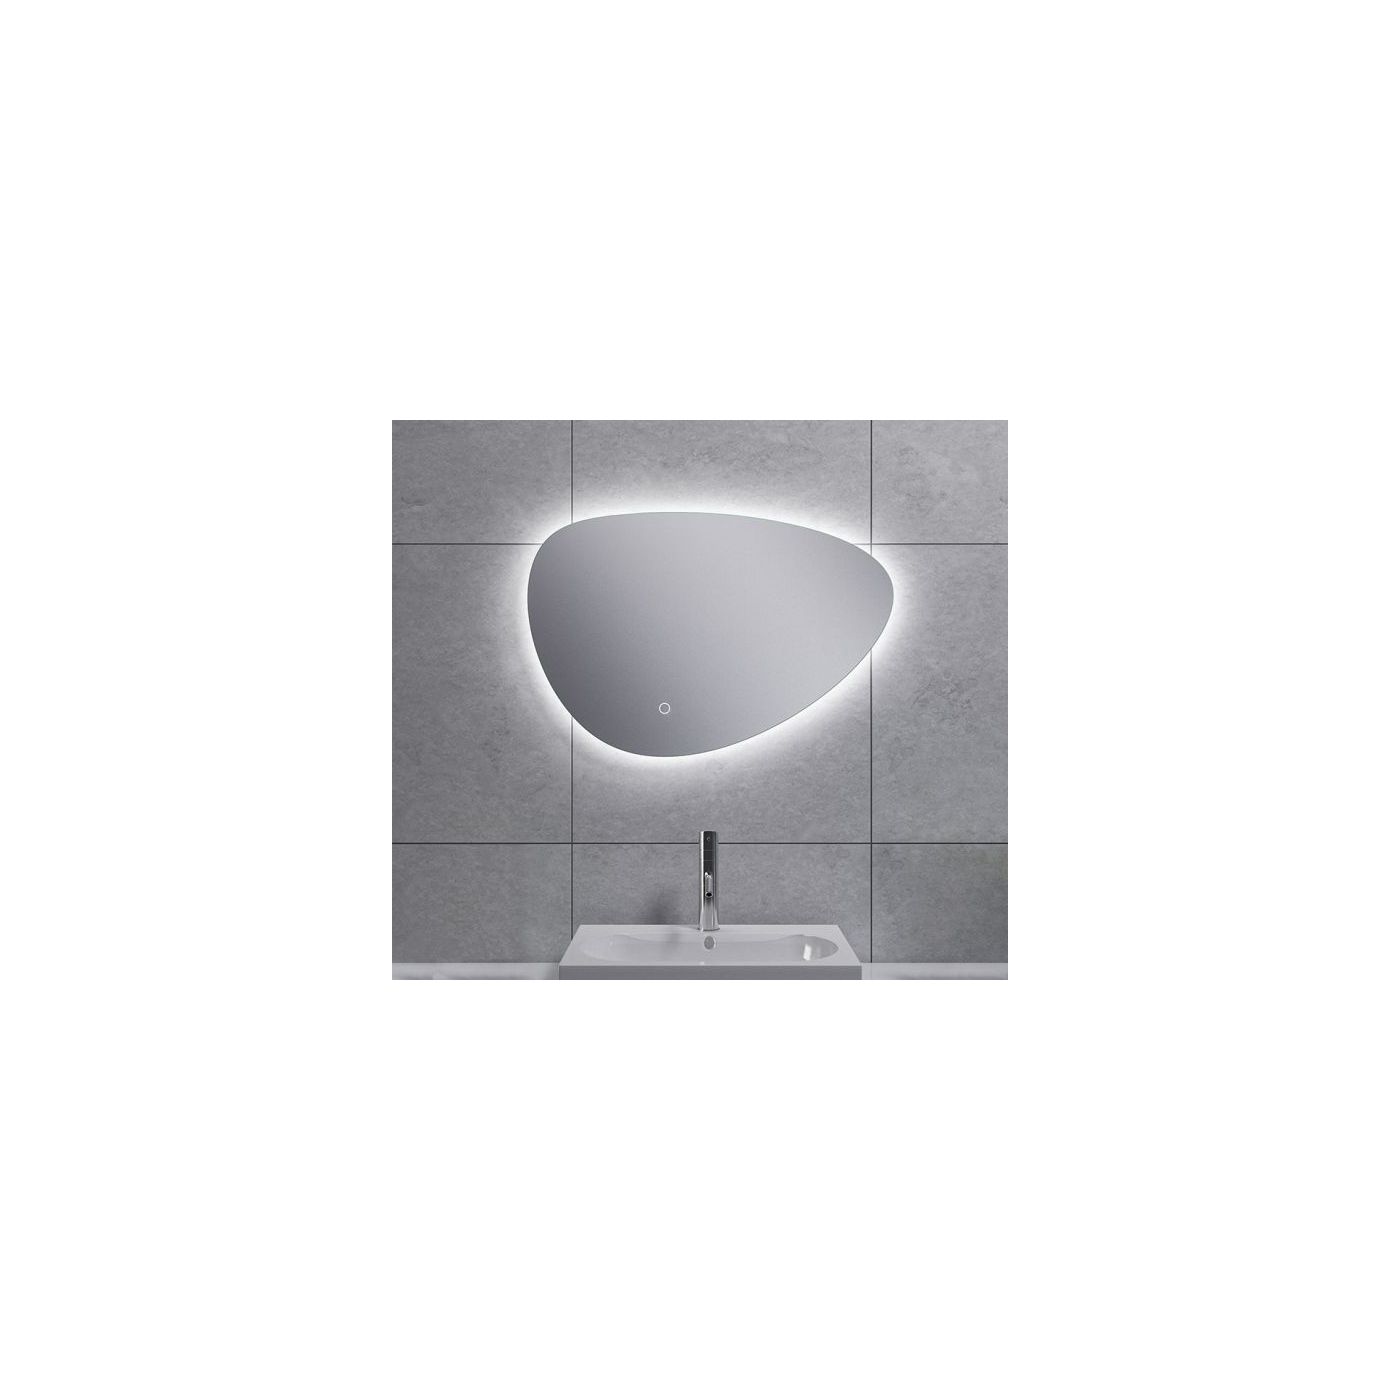 Wiesbaden Uovo spiegel eirond met LED verlichting 80x55 cm chroom